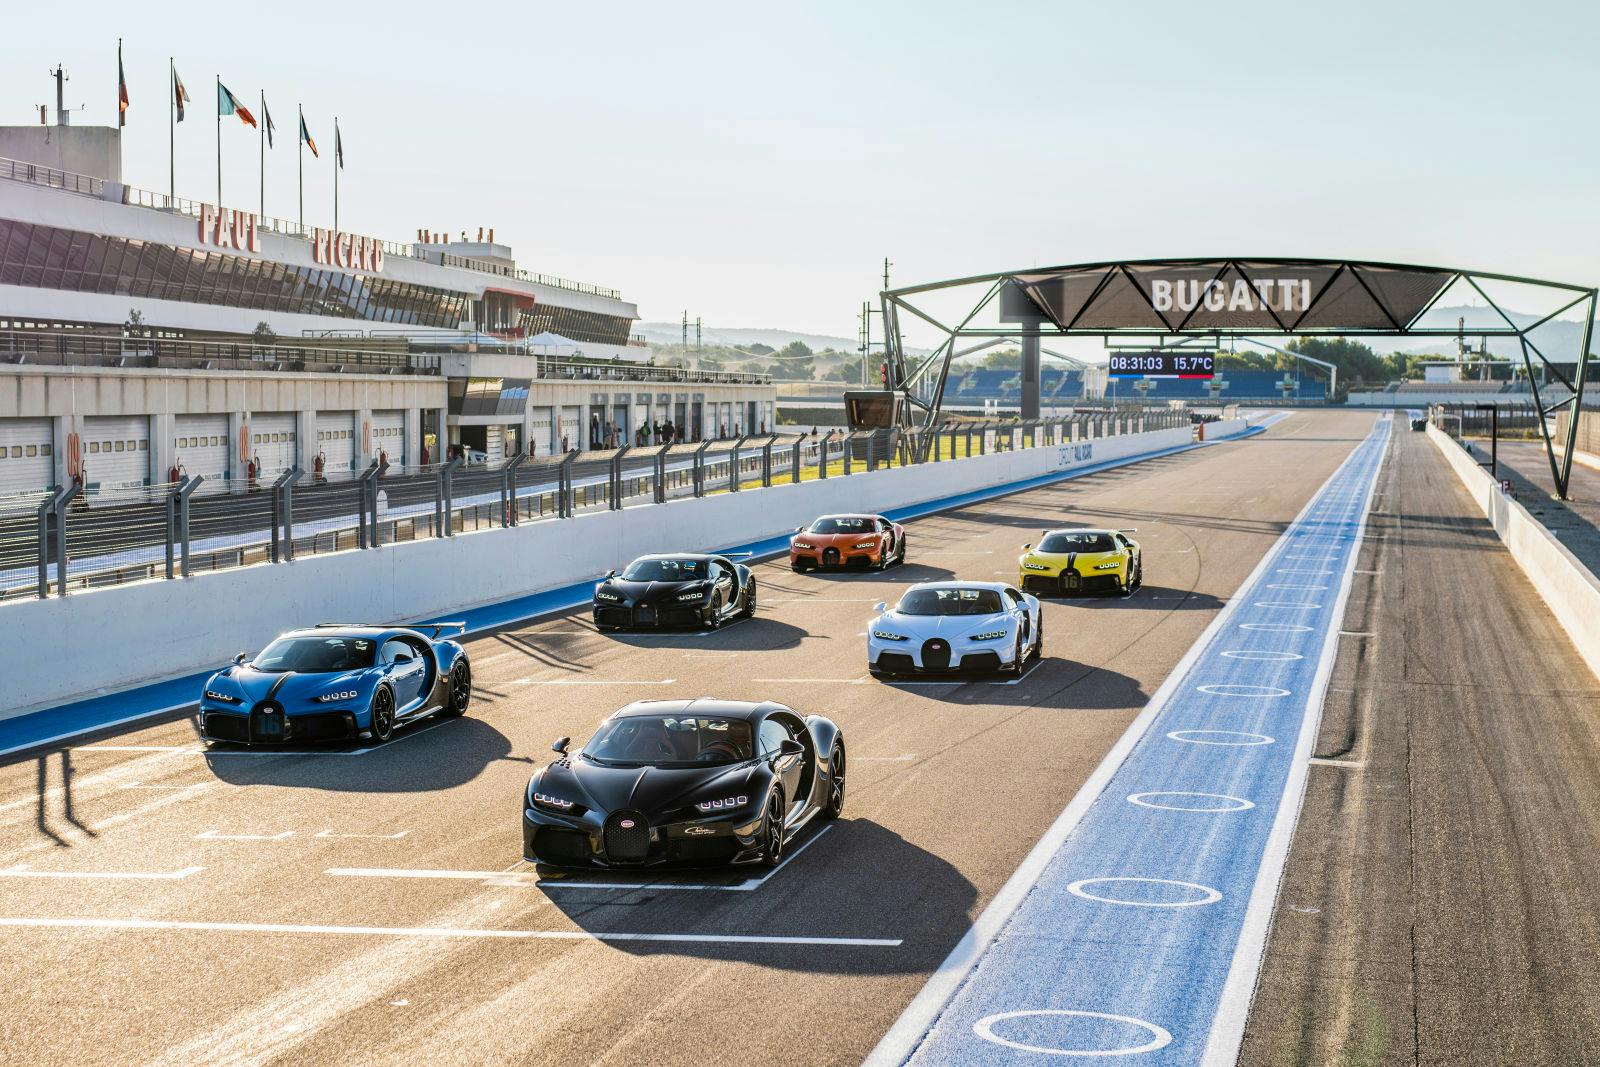 Das gesamte Leistungsspektrum von Bugatti auf dem Circuit Paul Ricard.